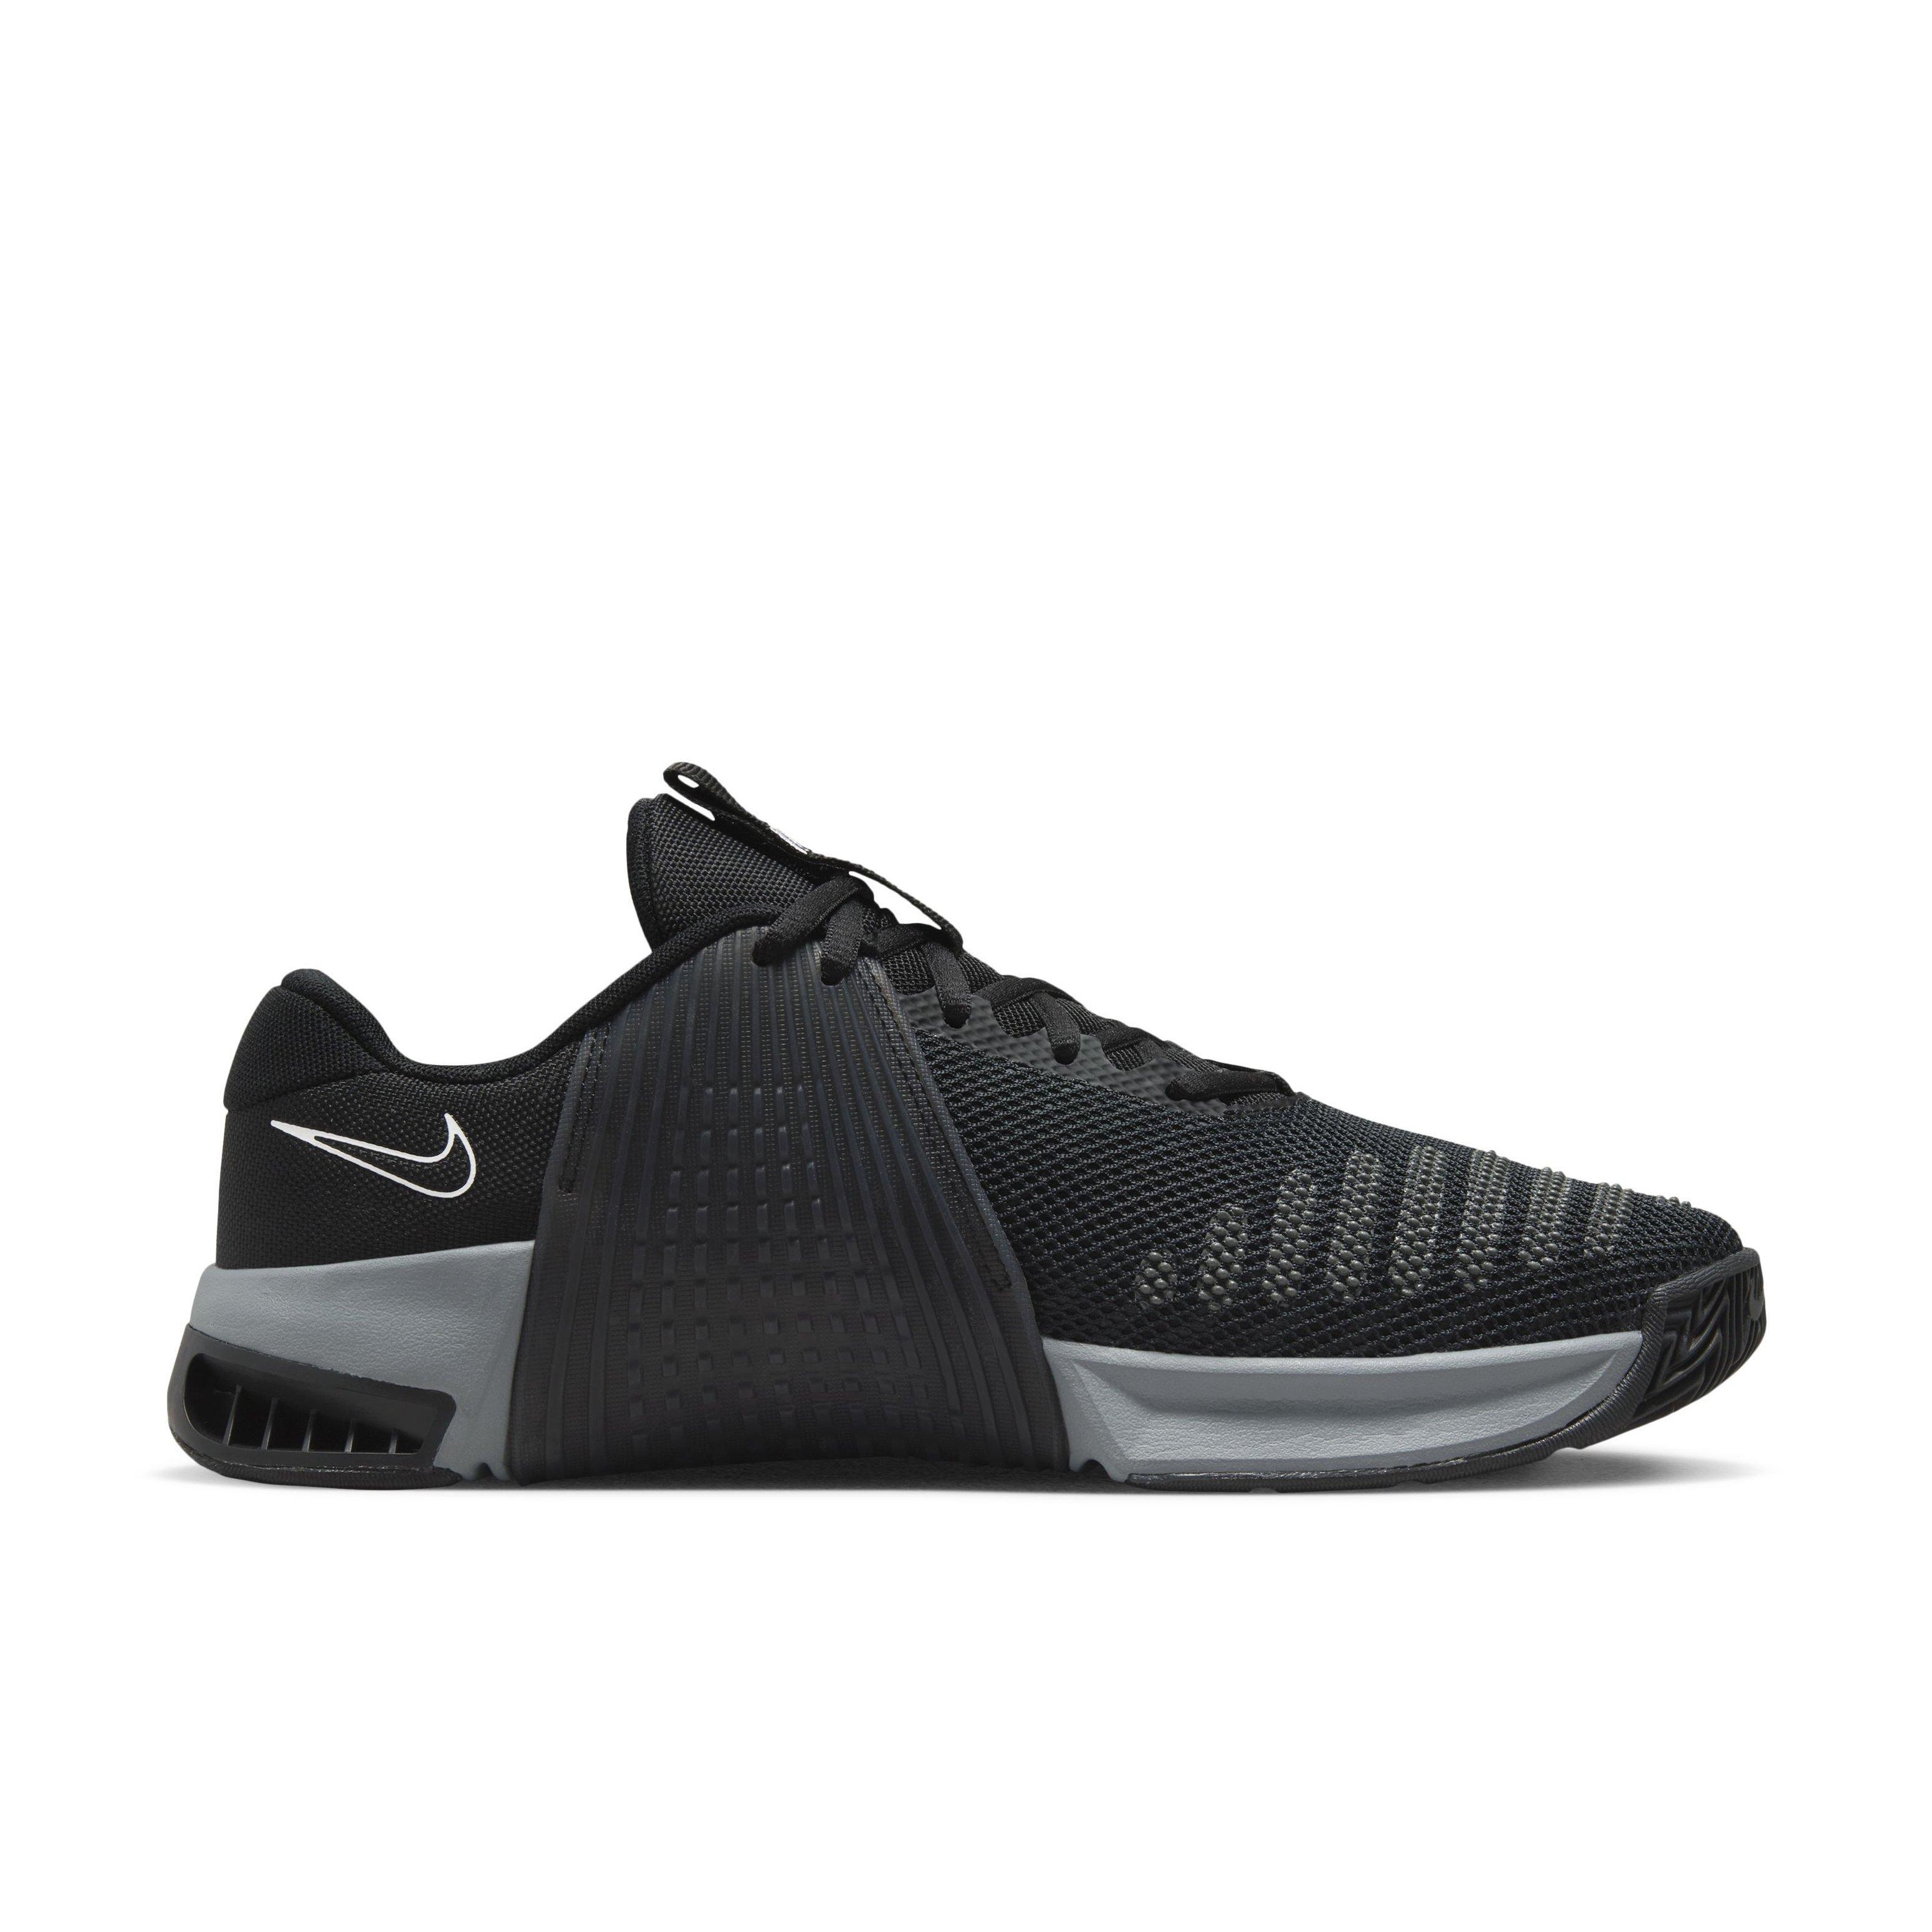 pulgada Descripción Muerto en el mundo Nike Metcon 9 "Black/White/Anthracite/Smoke Grey" Men's Training Shoe